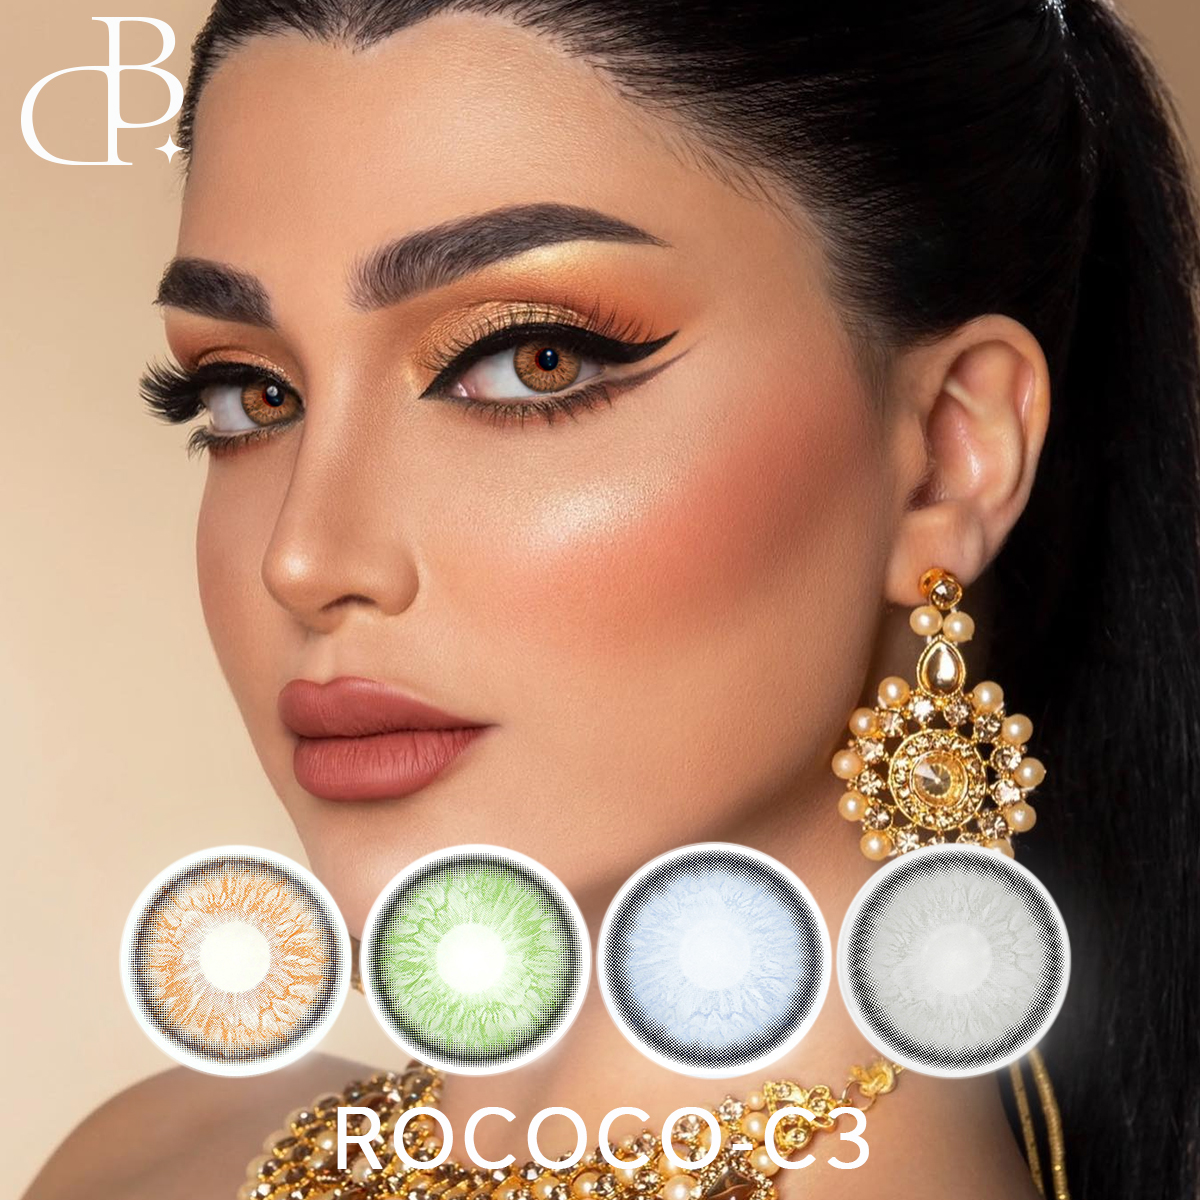 ROCOCO-3 neu aussehende kosmetische Großhandels-Farbkontaktlinsen günstige weiche Jahres-Augenfarbkontaktlinsen